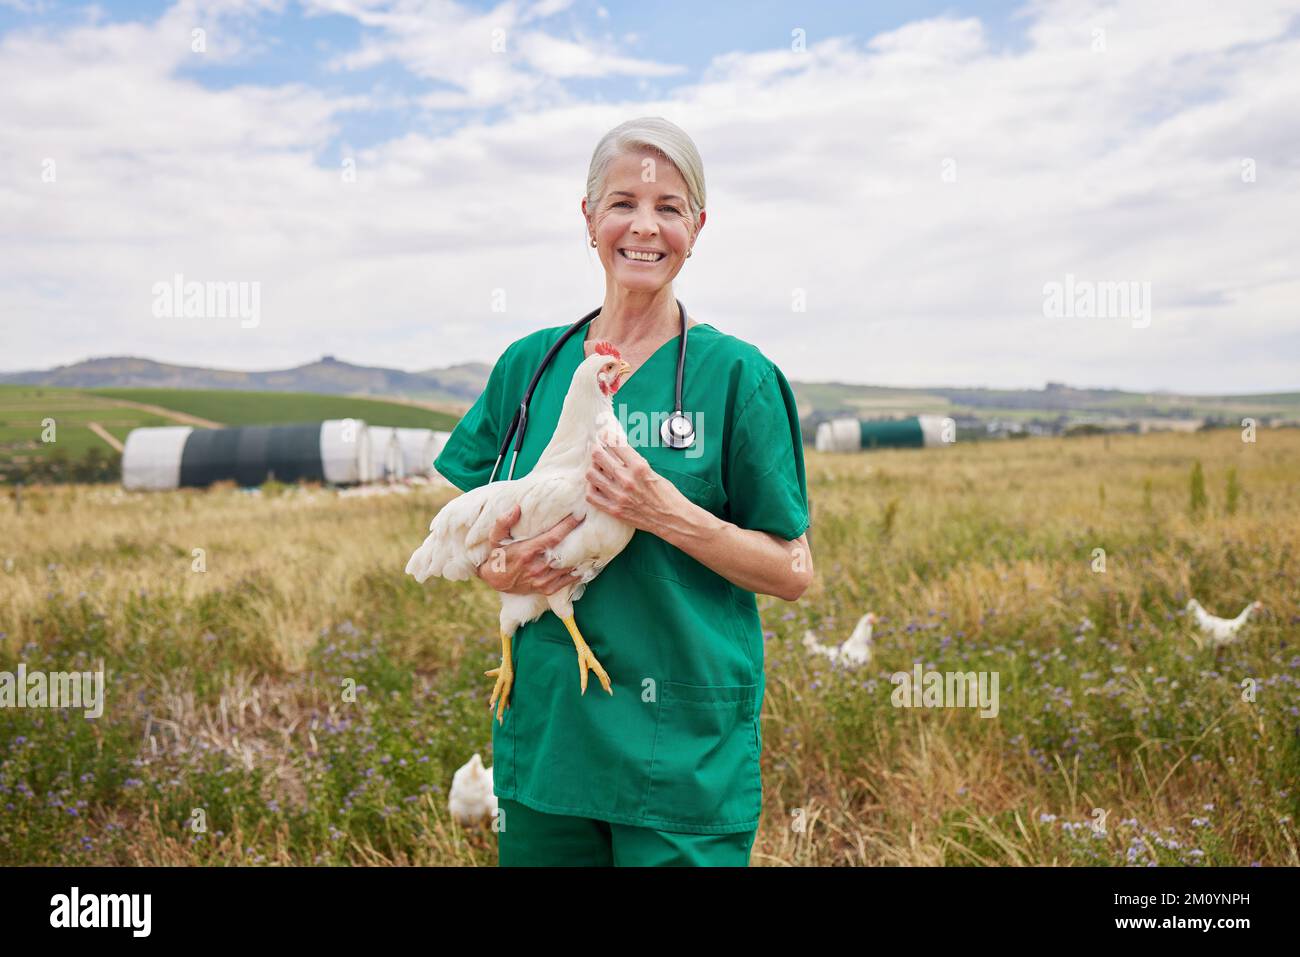 Halten Sie die Vogelpopulation gesund und glücklich. Porträt eines reifen Tierarztes, der ein Huhn in einem Geflügelhaltungsbetrieb hält. Stockfoto